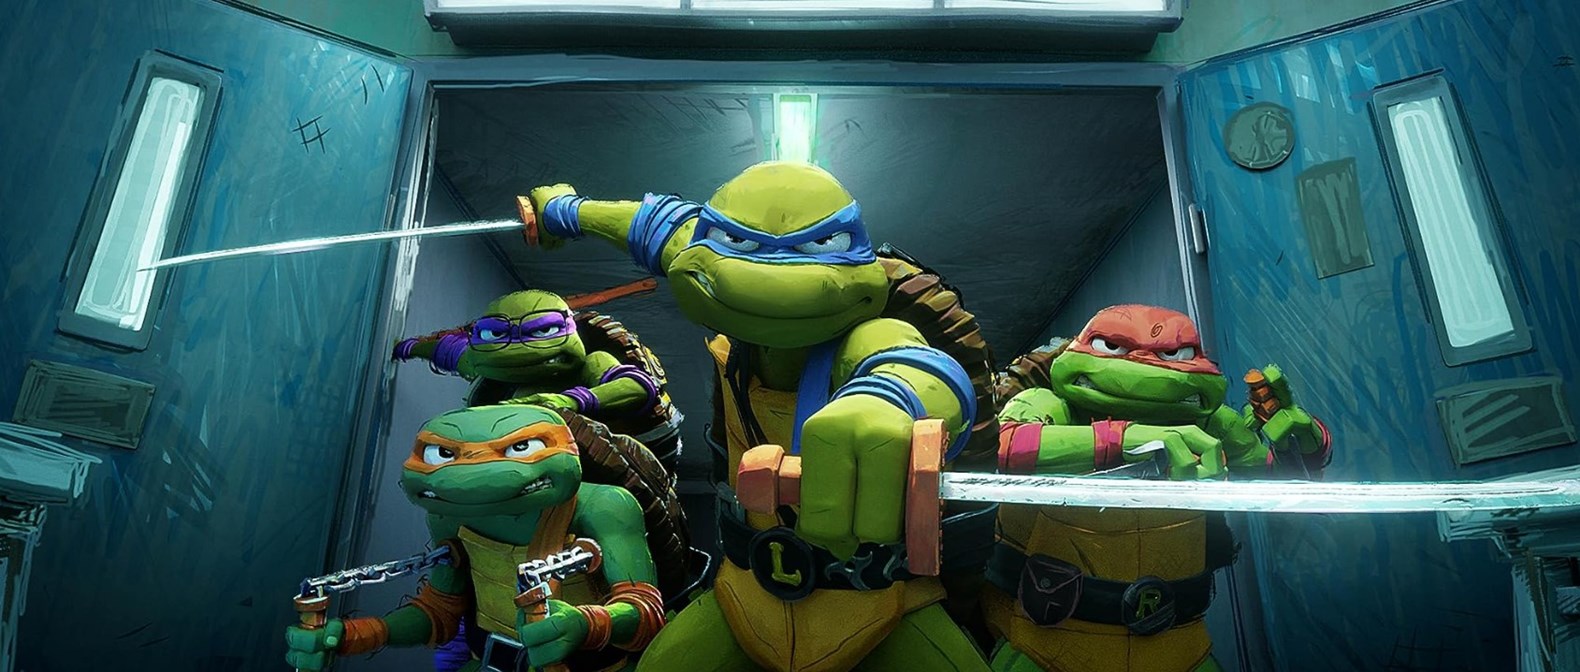 Image for Teenage Mutant Ninja Turtles: Mutant Mayhem